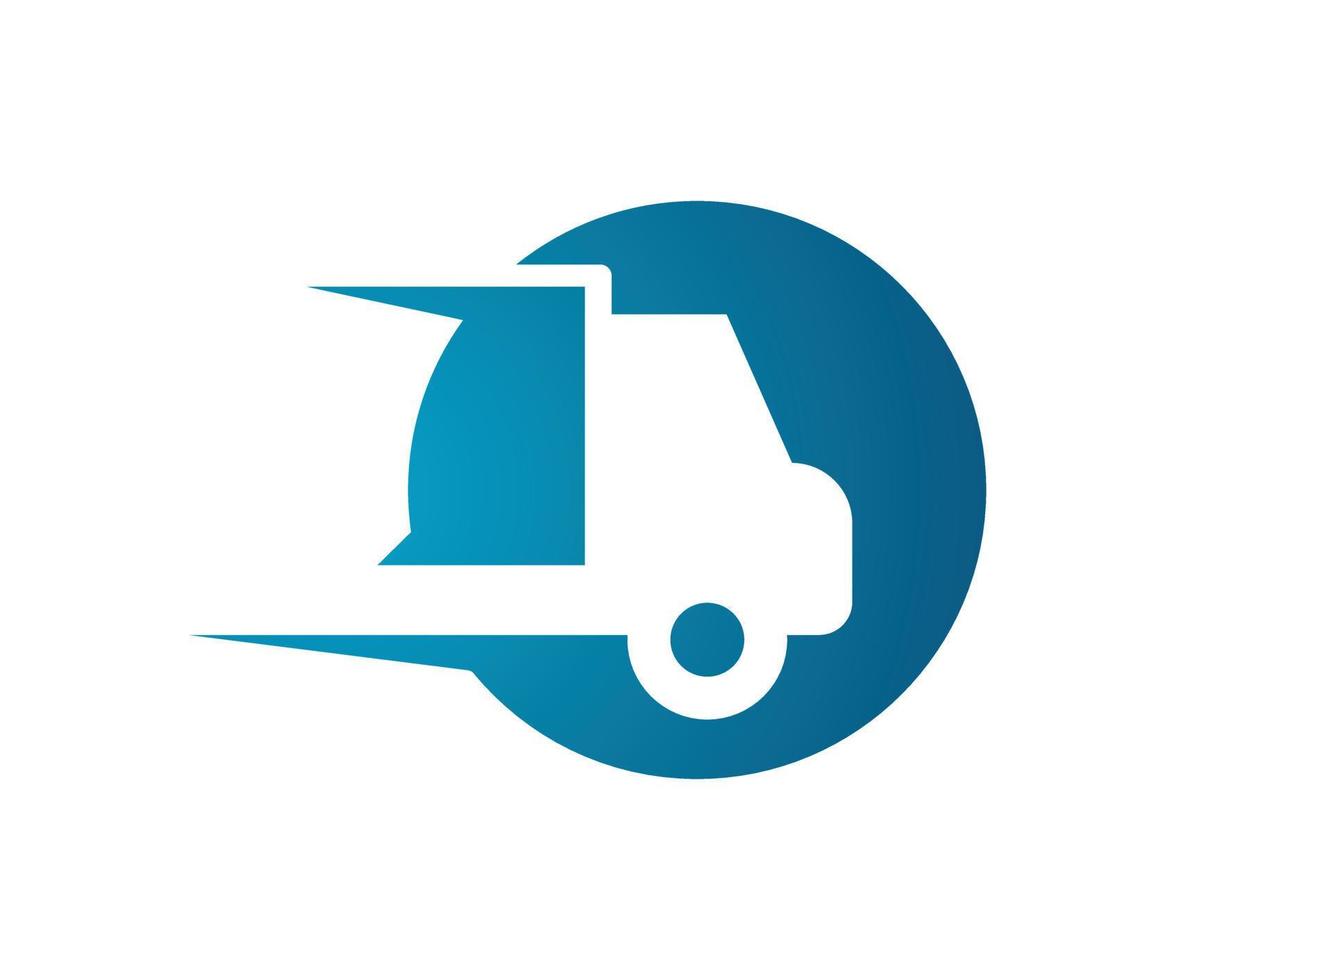 moderno consegna servizio logo illustrazione isolato vettore